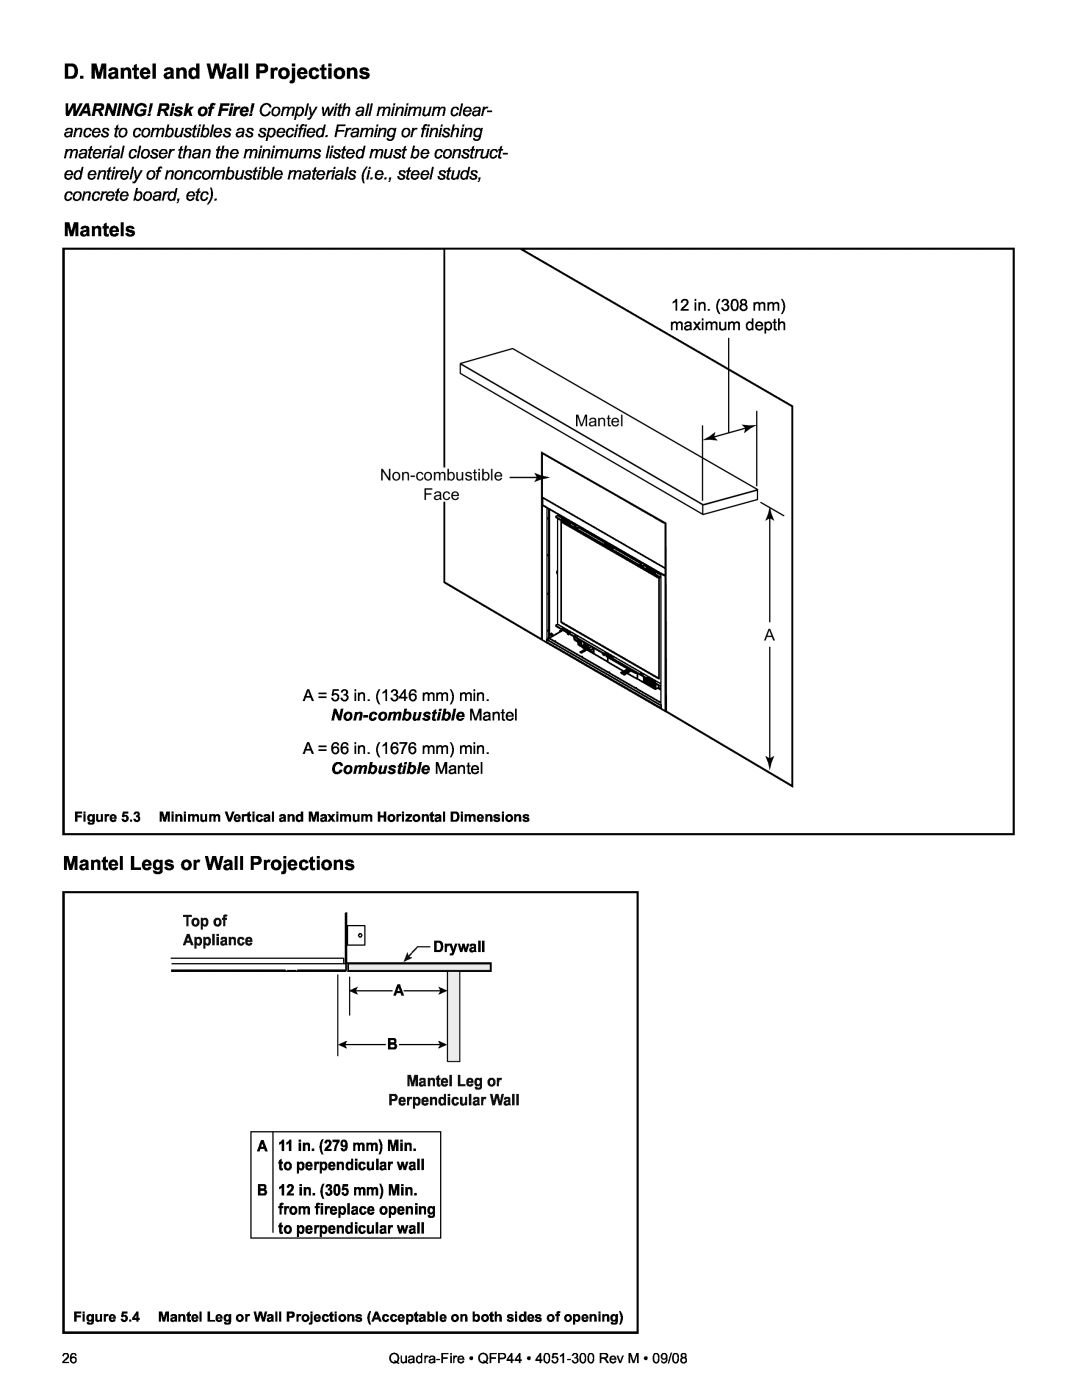 Quadra-Fire QFP44 owner manual D. Mantel and Wall Projections, Mantels, Mantel Legs or Wall Projections 